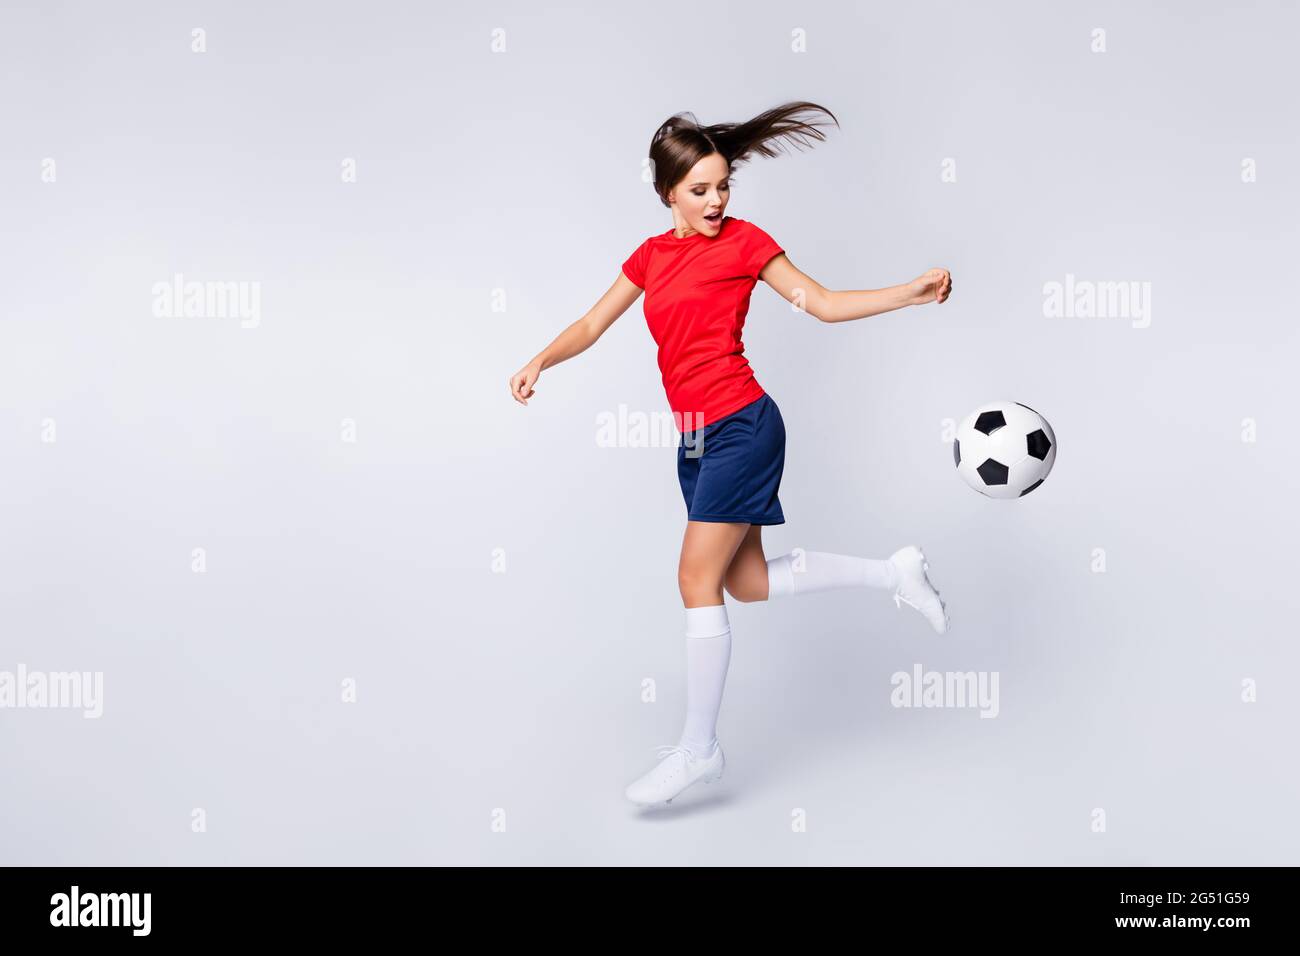 Perfil completo foto de cool joy air fly jugador fútbol ball ejercicio entrenamiento salto captura pase ropa de fútbol camiseta pantalón corto uniforme Fotografía de stock -